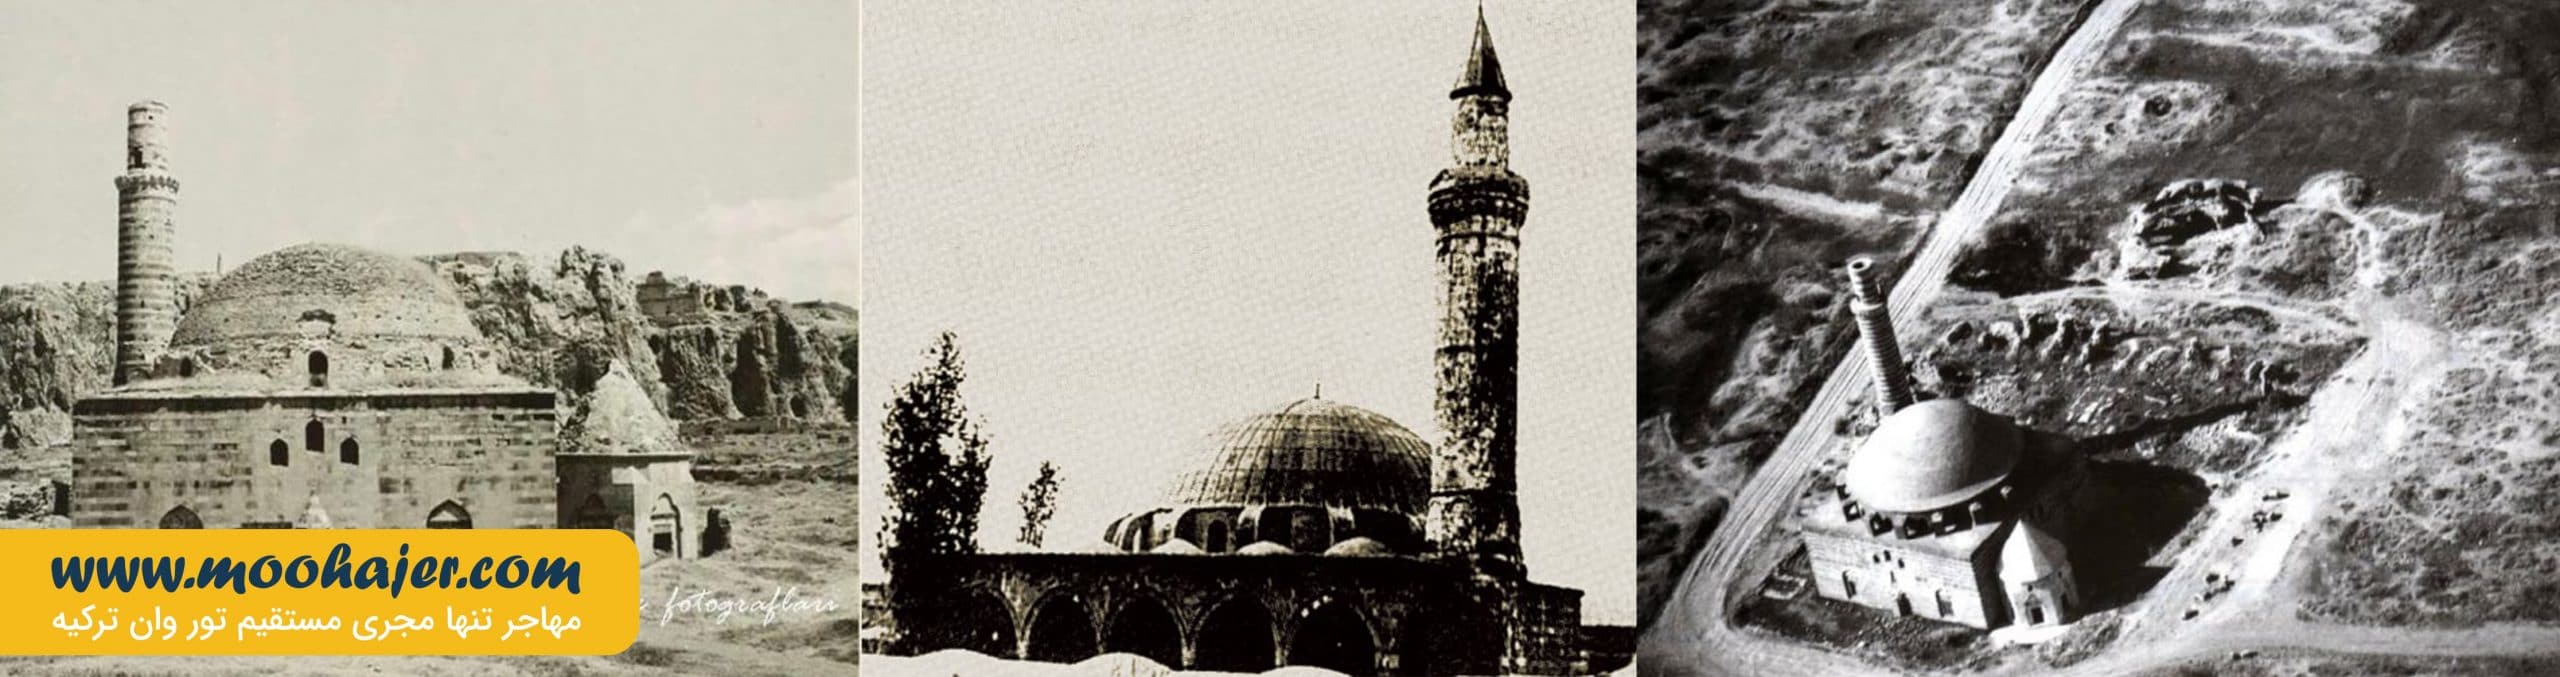 مسجد خسرو پاشا | جاذبه های گردشگری وان | مهاجر سیر ایرانیان